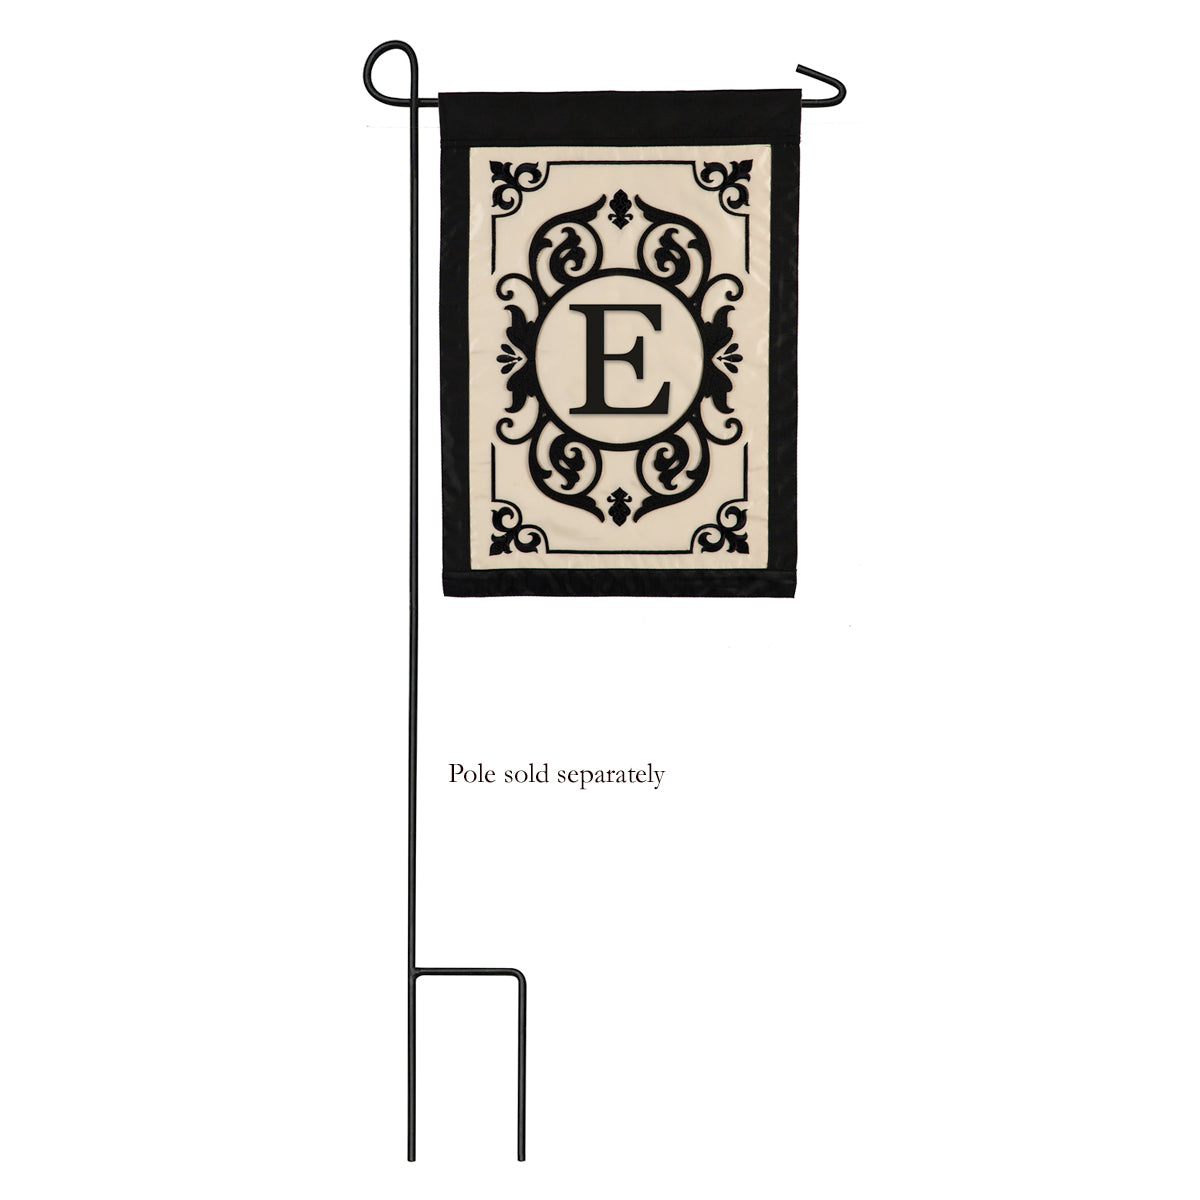 Cambridge Monogram Garden Applique Flag, "E"